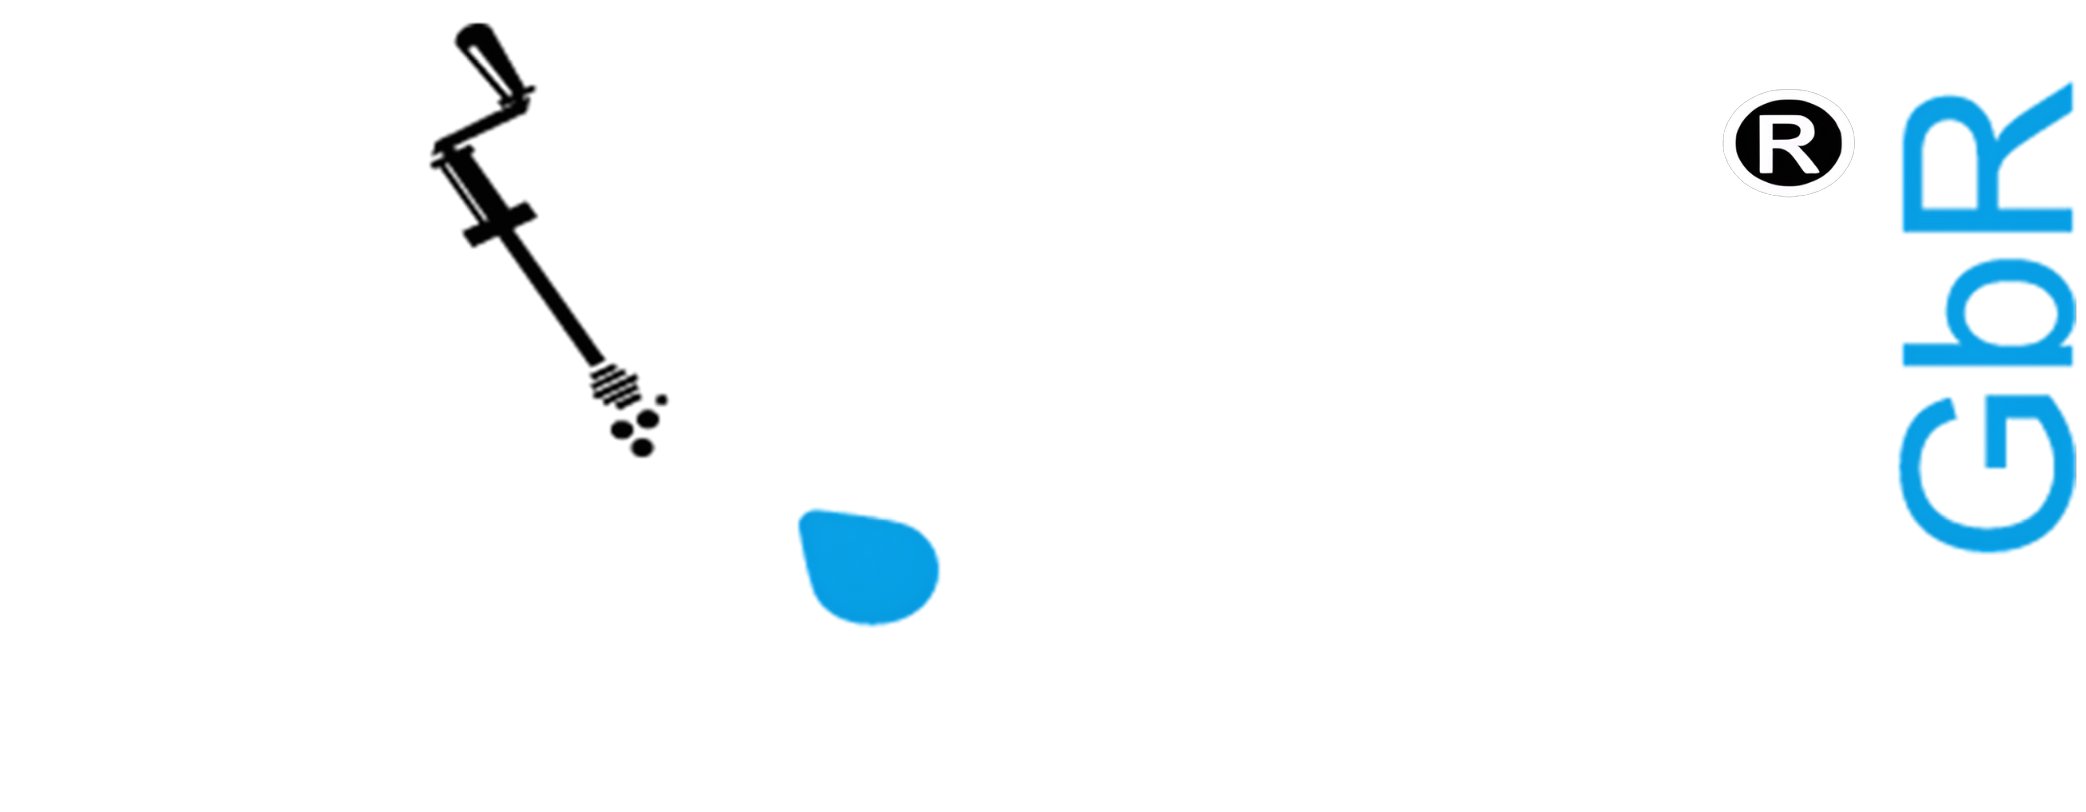 Karli Rohr- & Kanalreinigung GbR